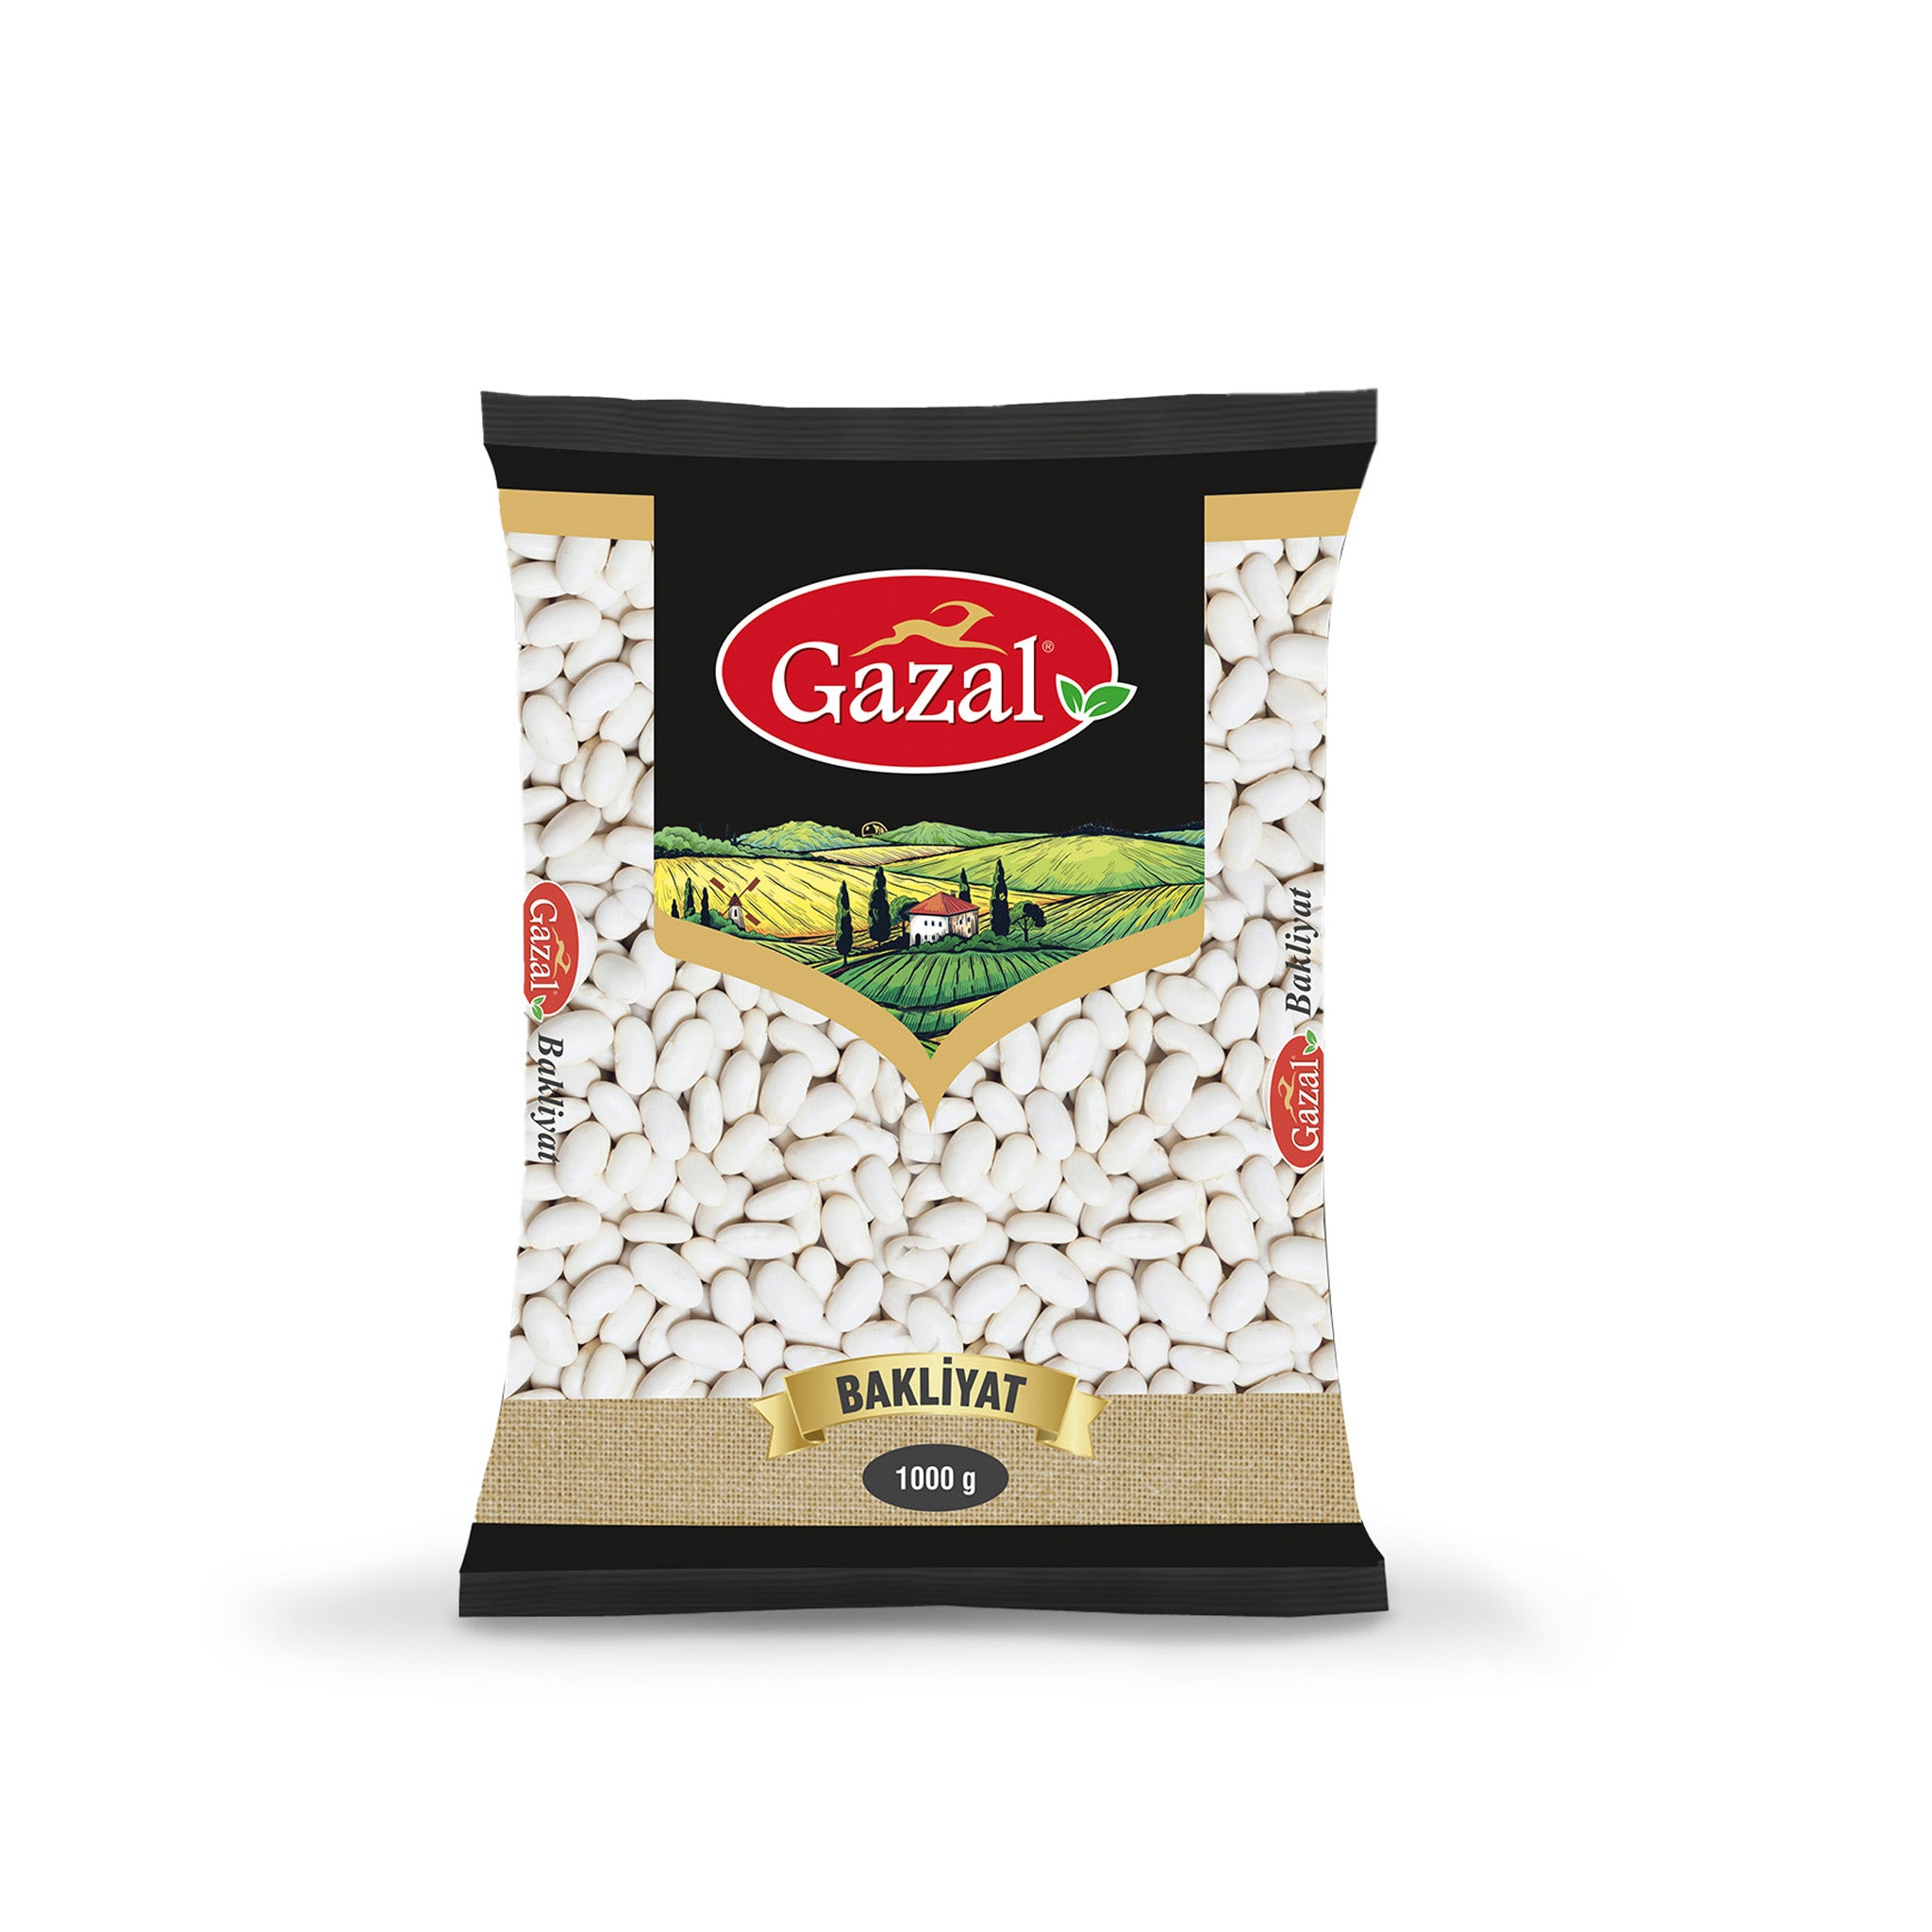 Gazal Packet Beans 1 Kg*10